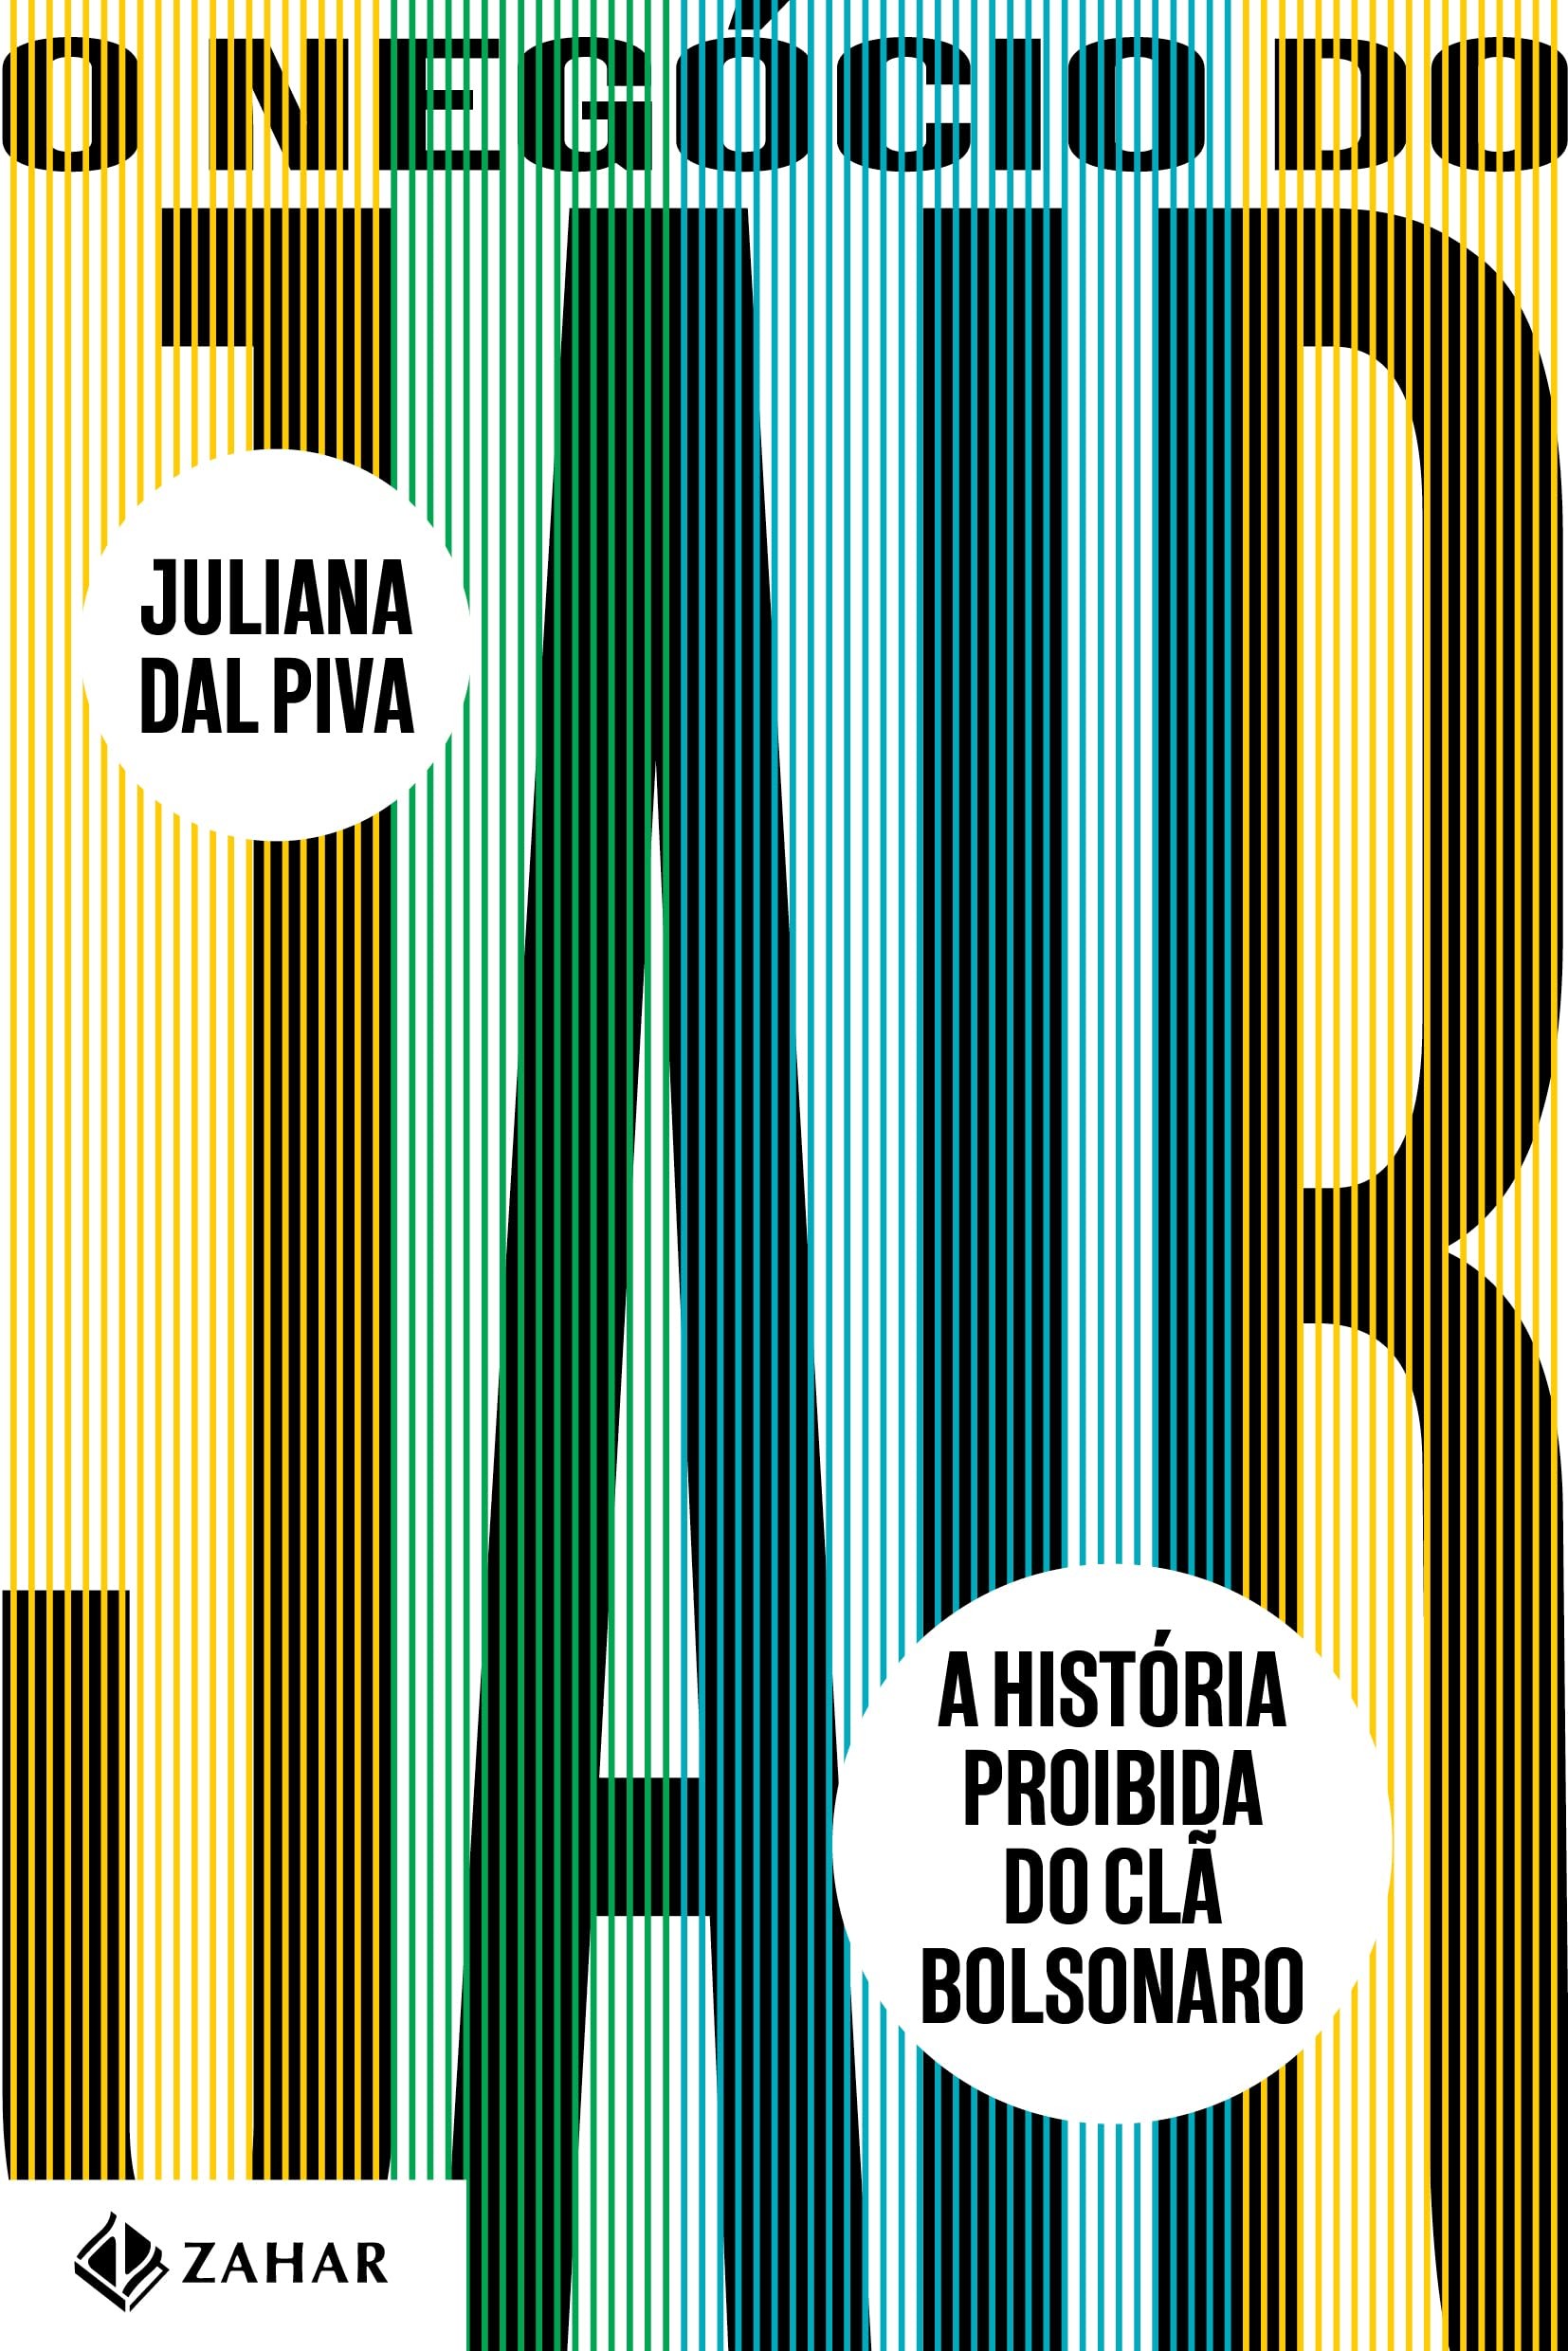 O Negócio do Jair: a história proibida do clã Bolsonaro, por Juliana Dal Piva (Companhia das Letras, 328 páginas, R$ 84,90) (Foto: Divulgação)